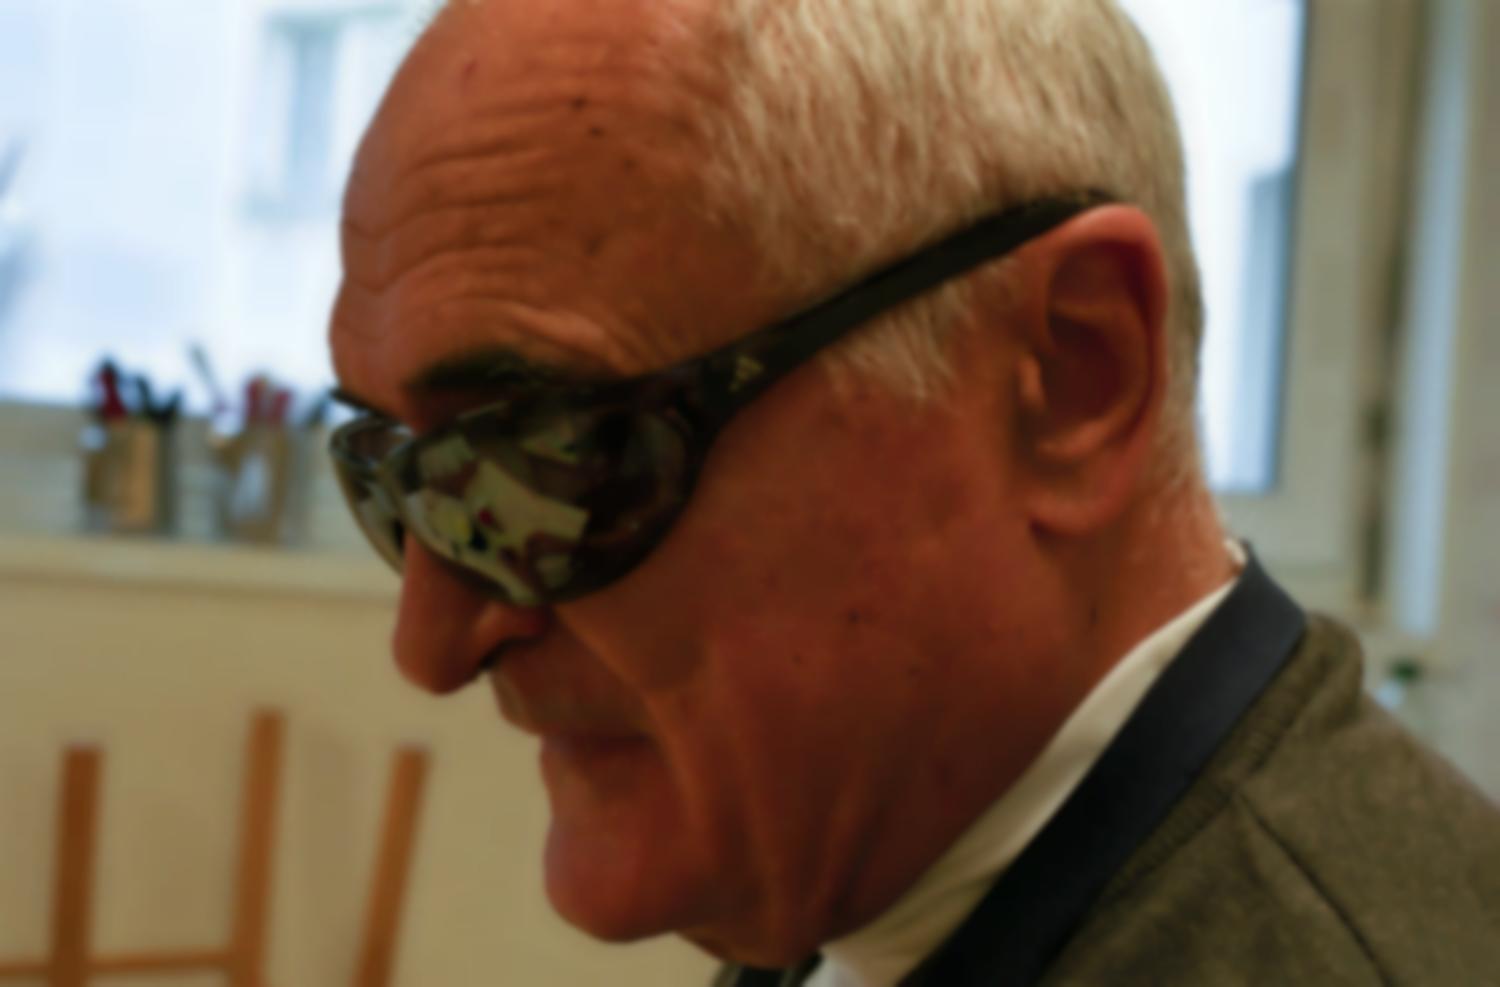 Portrait de Claude au cours d'Autonomie de la vie journalière : dans ses lunettes noires se reflètent ses mains en train d'éplucher de l'ail et les ustensiles qu'il va utiliser pour préparer de l'aïoli . Paris, octobre 2005.